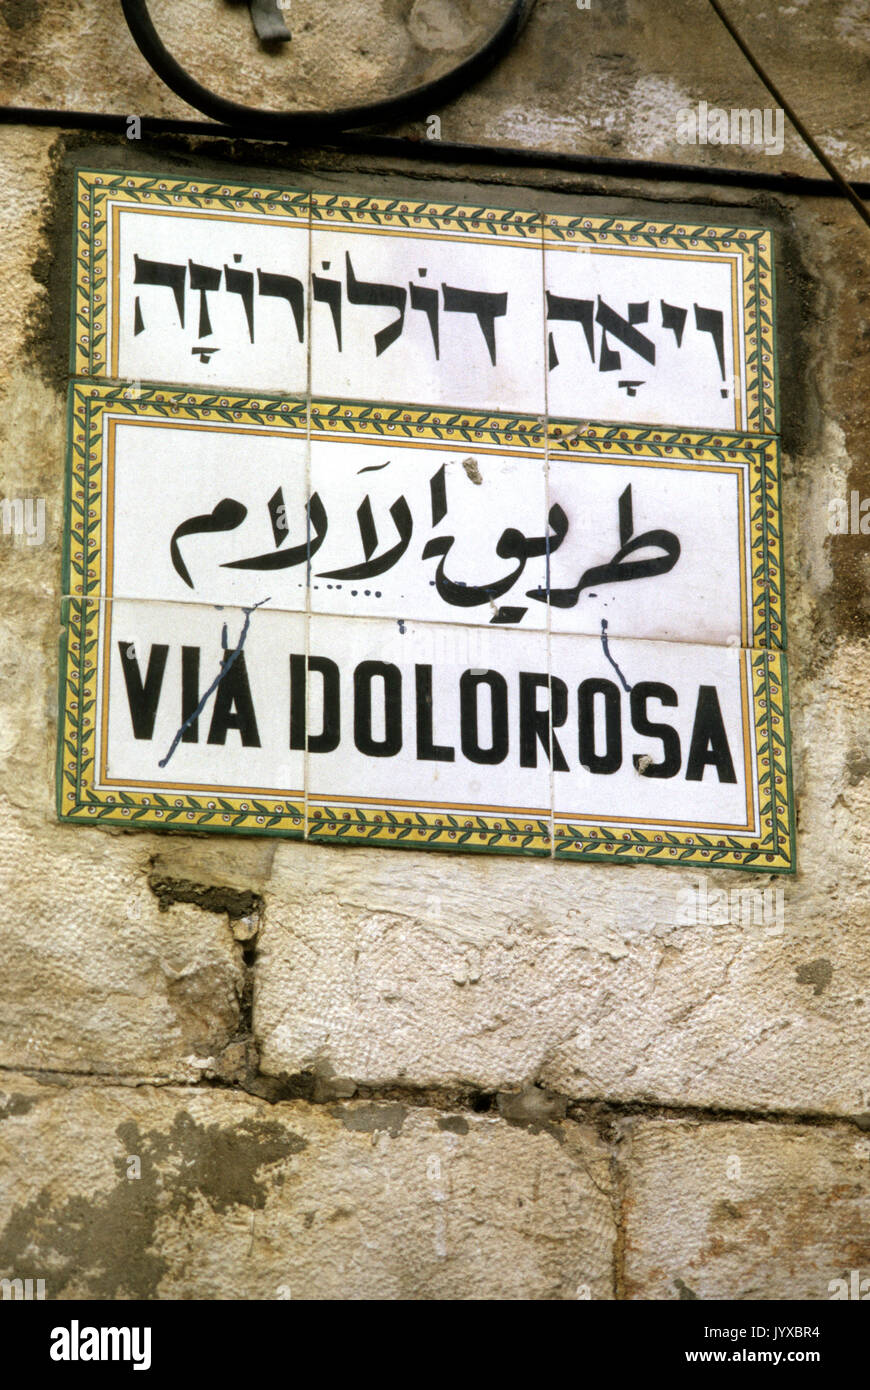 Via Dolorosa in Jerusalem 1987 April 03 biblischen Umgebungen glaubte, den Weg zu Jesus auf dem Weg zur Kreuzigung ging. Stockfoto